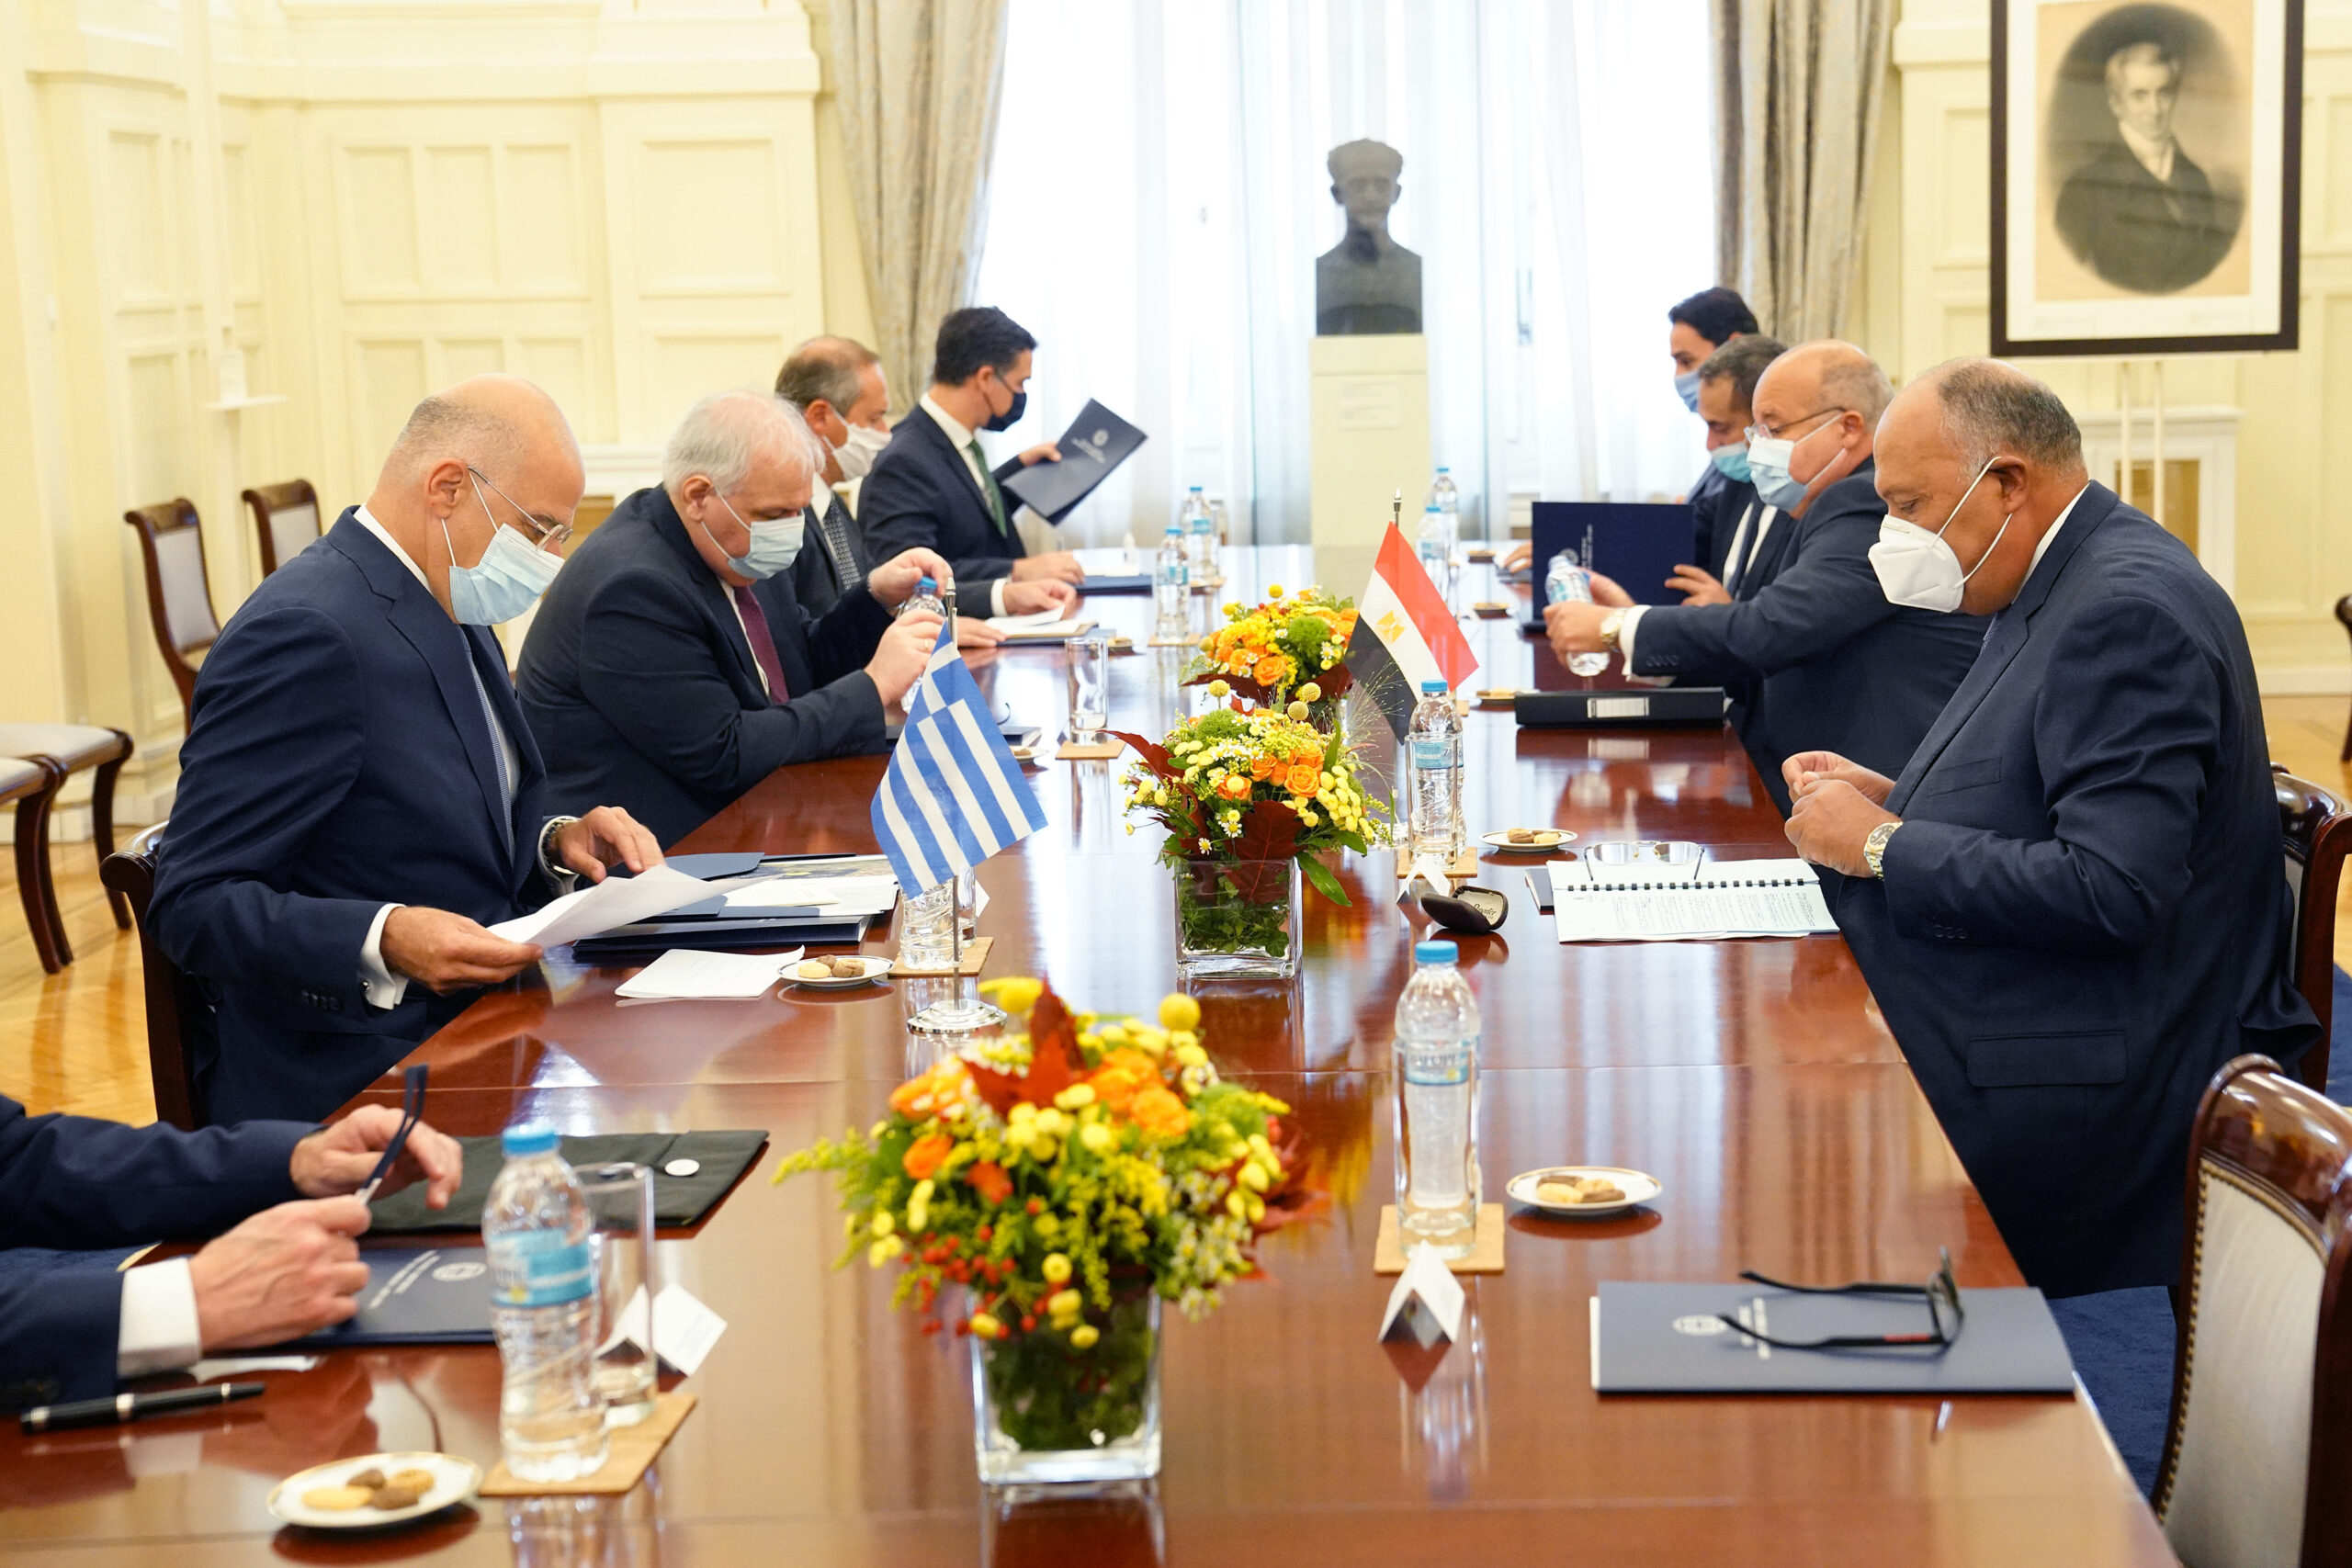 Συνάντηση του Υπουργού Εξωτερικών, κ. Νίκου Δένδια, με τον Υπουργό Εξωτερικών της Αιγύπτου, κ. Sameh Shoukry  (Αθήνα, 15.09.2020)